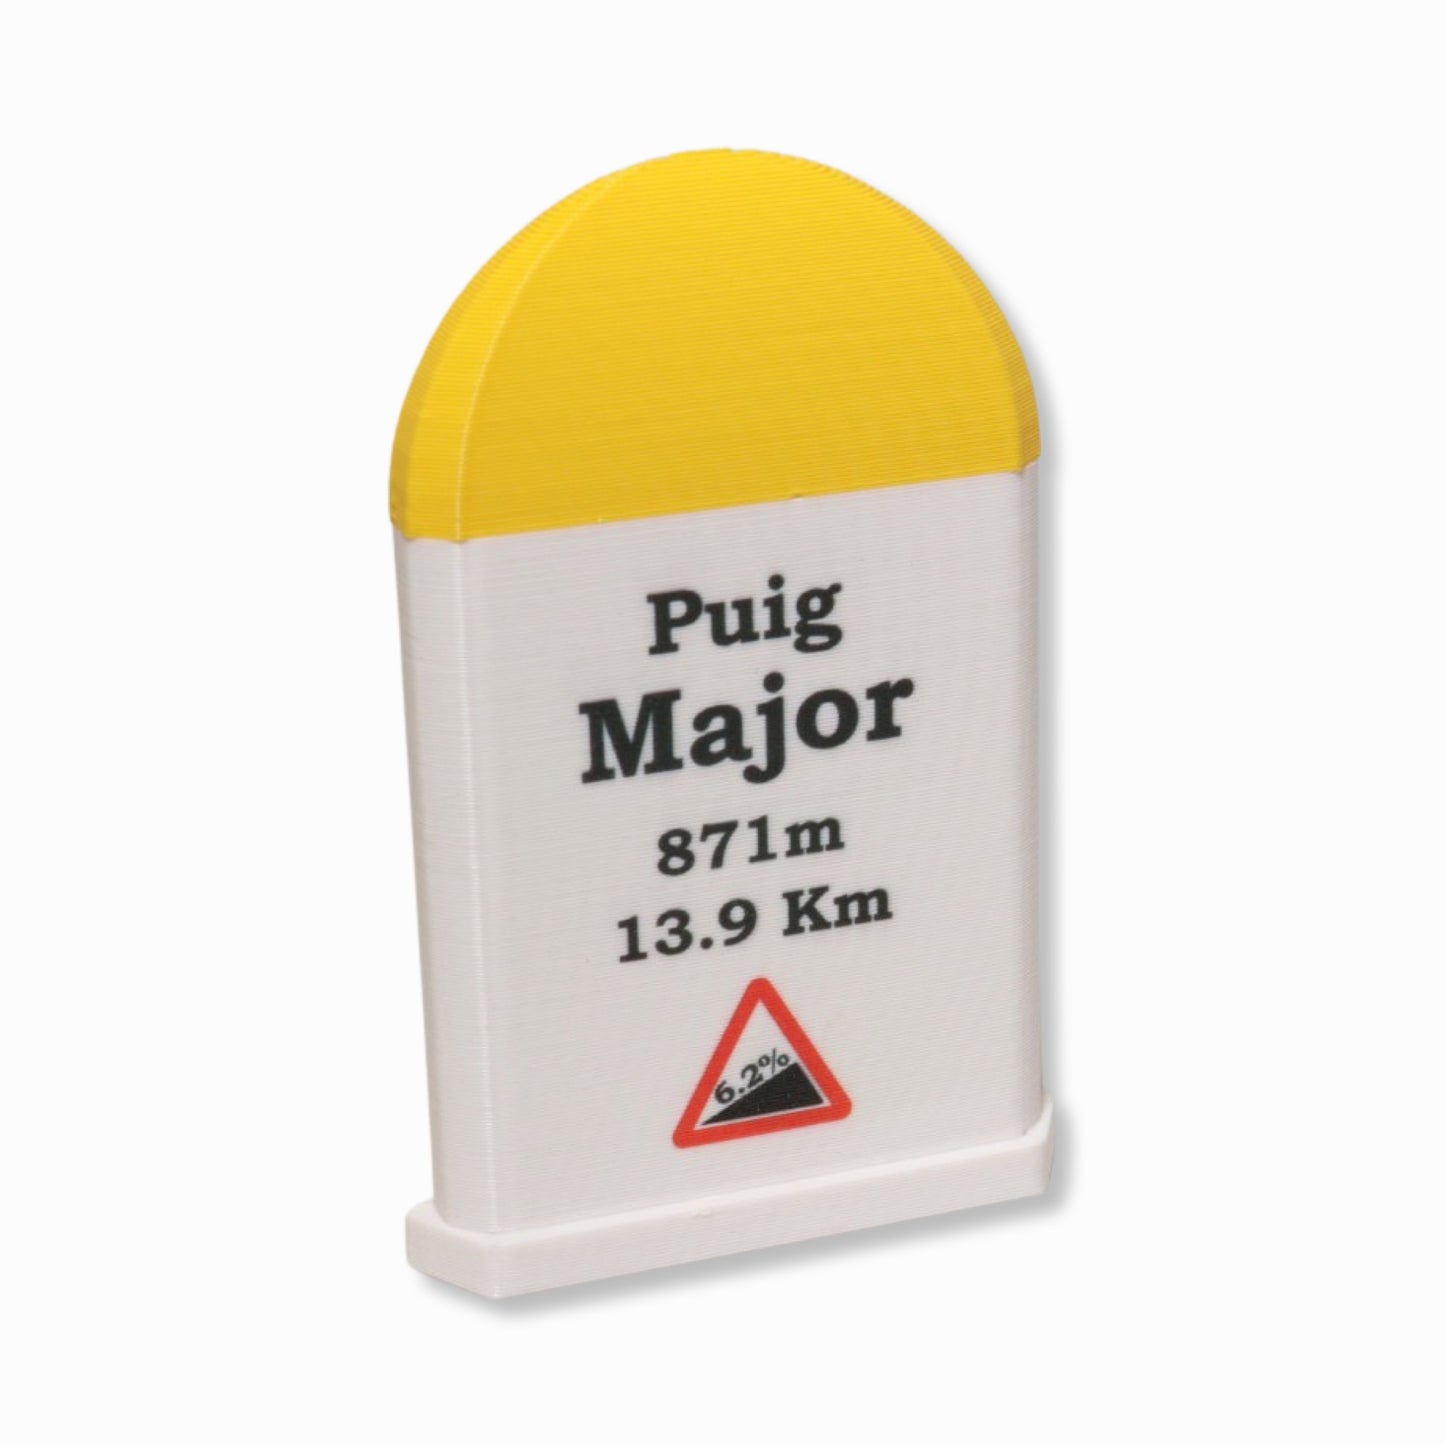 Puig Major Magnet